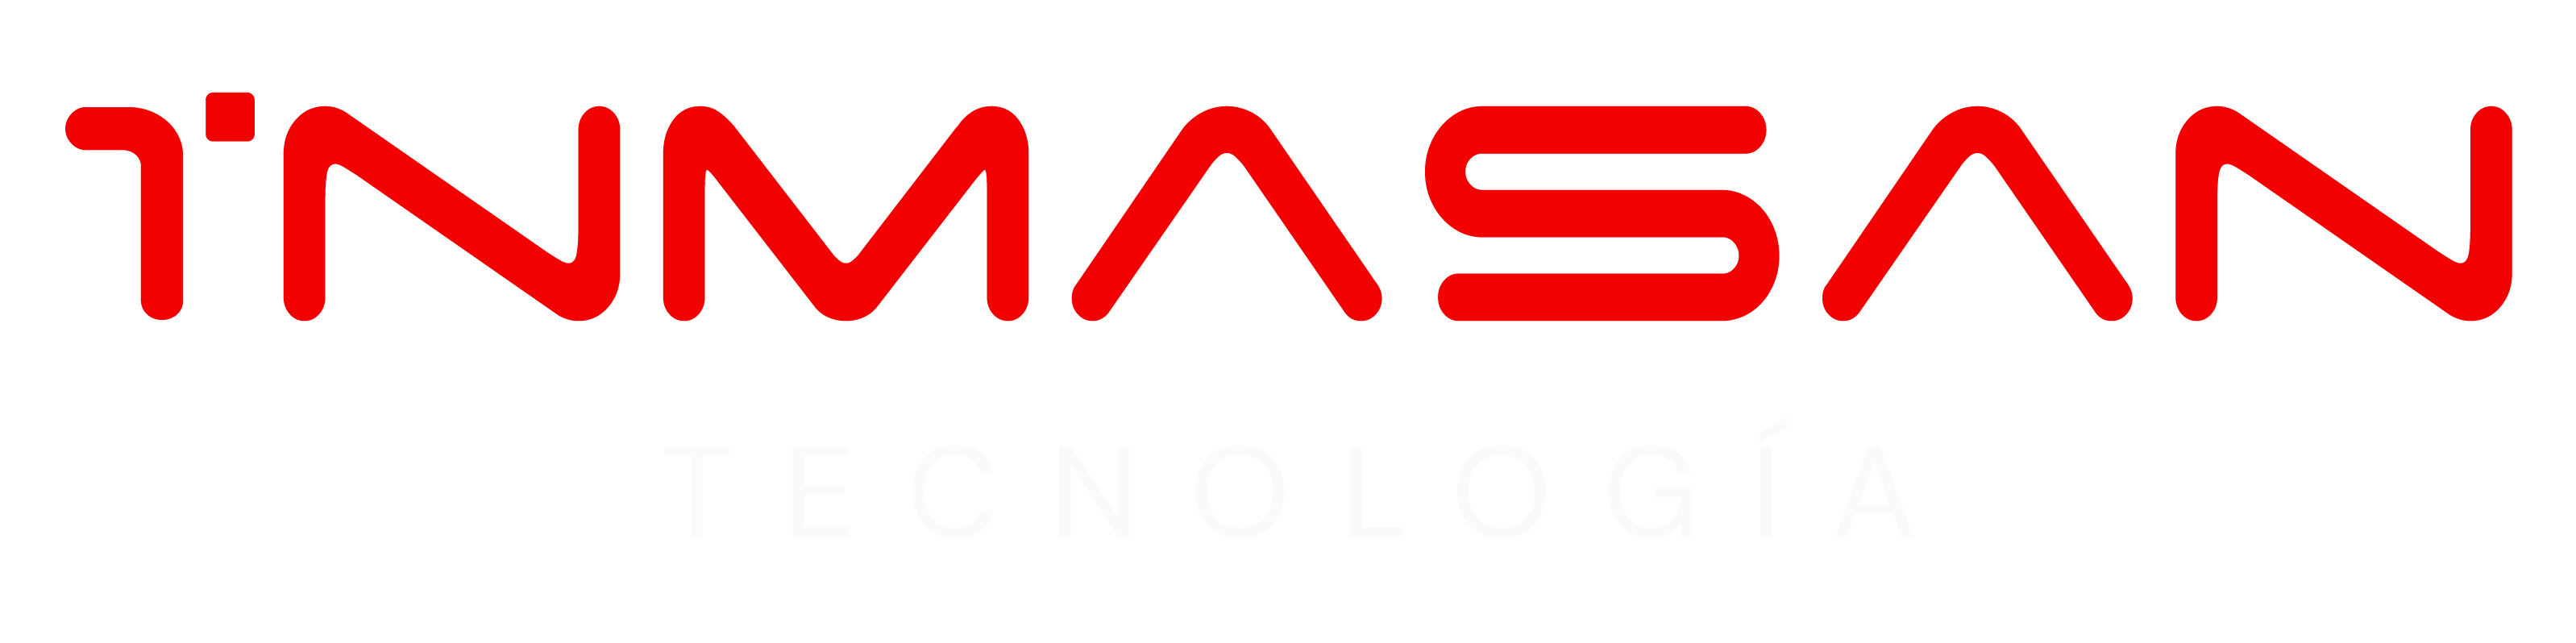 Logotipo Inmasan Tecnología rojo y blanco